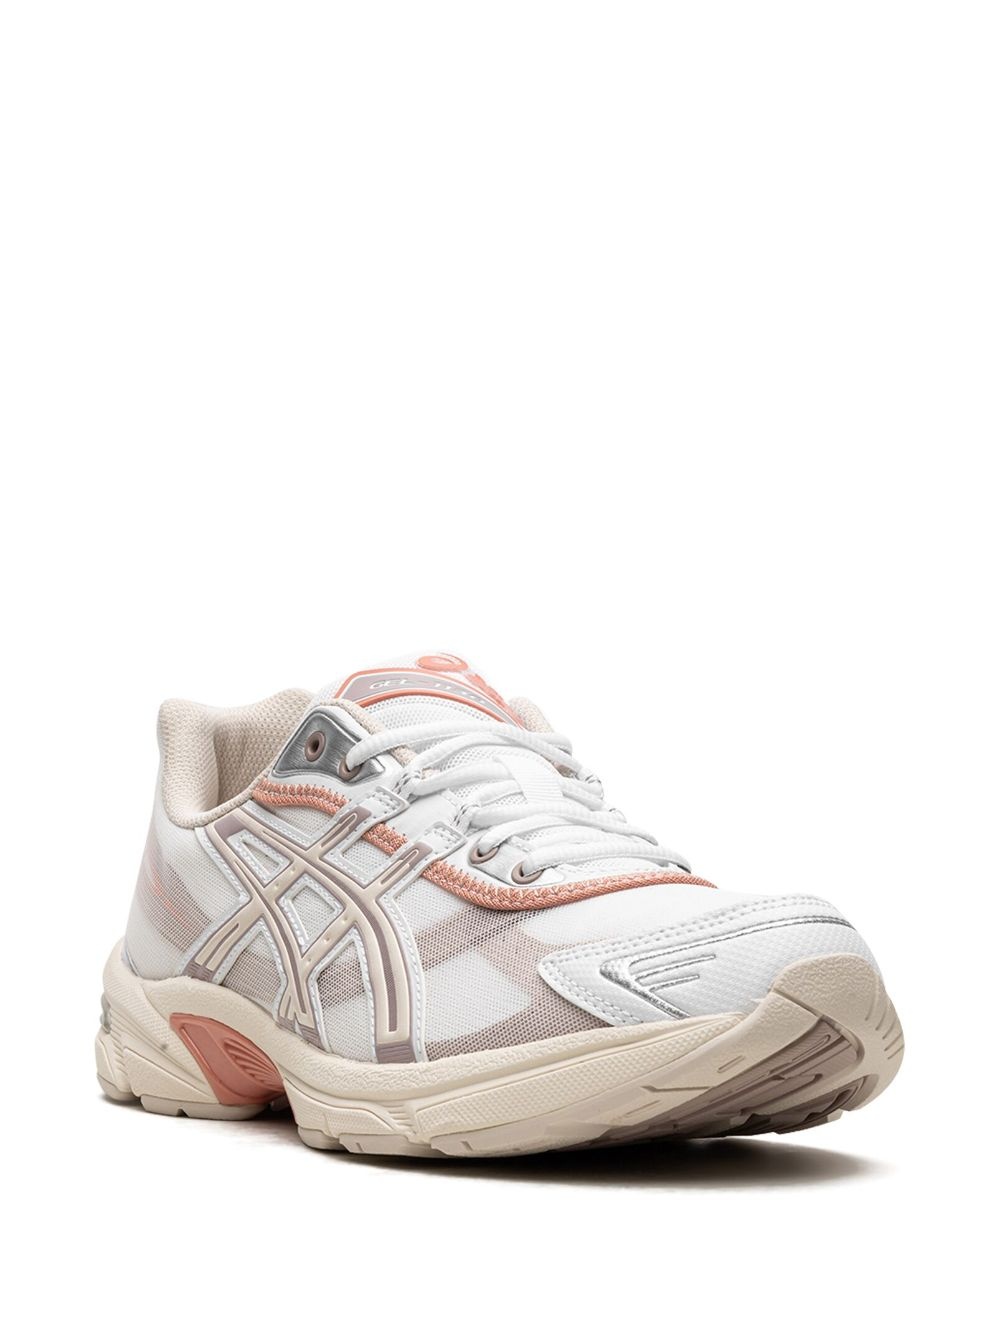 Gel-1130 RE "White/Oatmeal" sneakers - 2